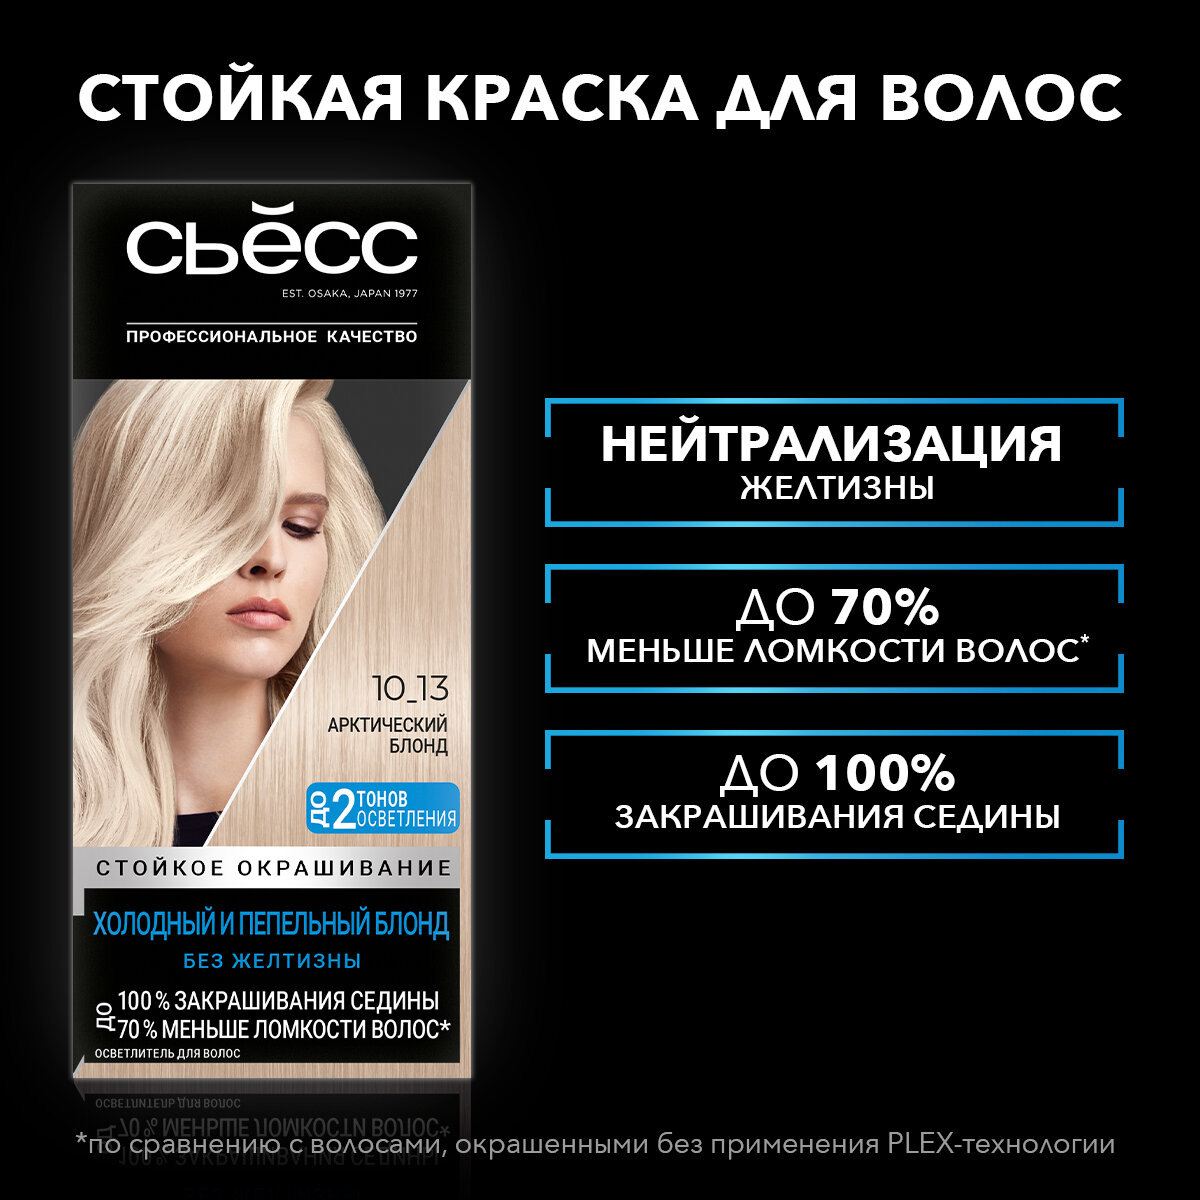 СЬЁСС Стойкая крем-краска для волос Color 10-13 Арктический блонд, 115 мл — купить в интернет-магазине по низкой цене на Яндекс Маркете